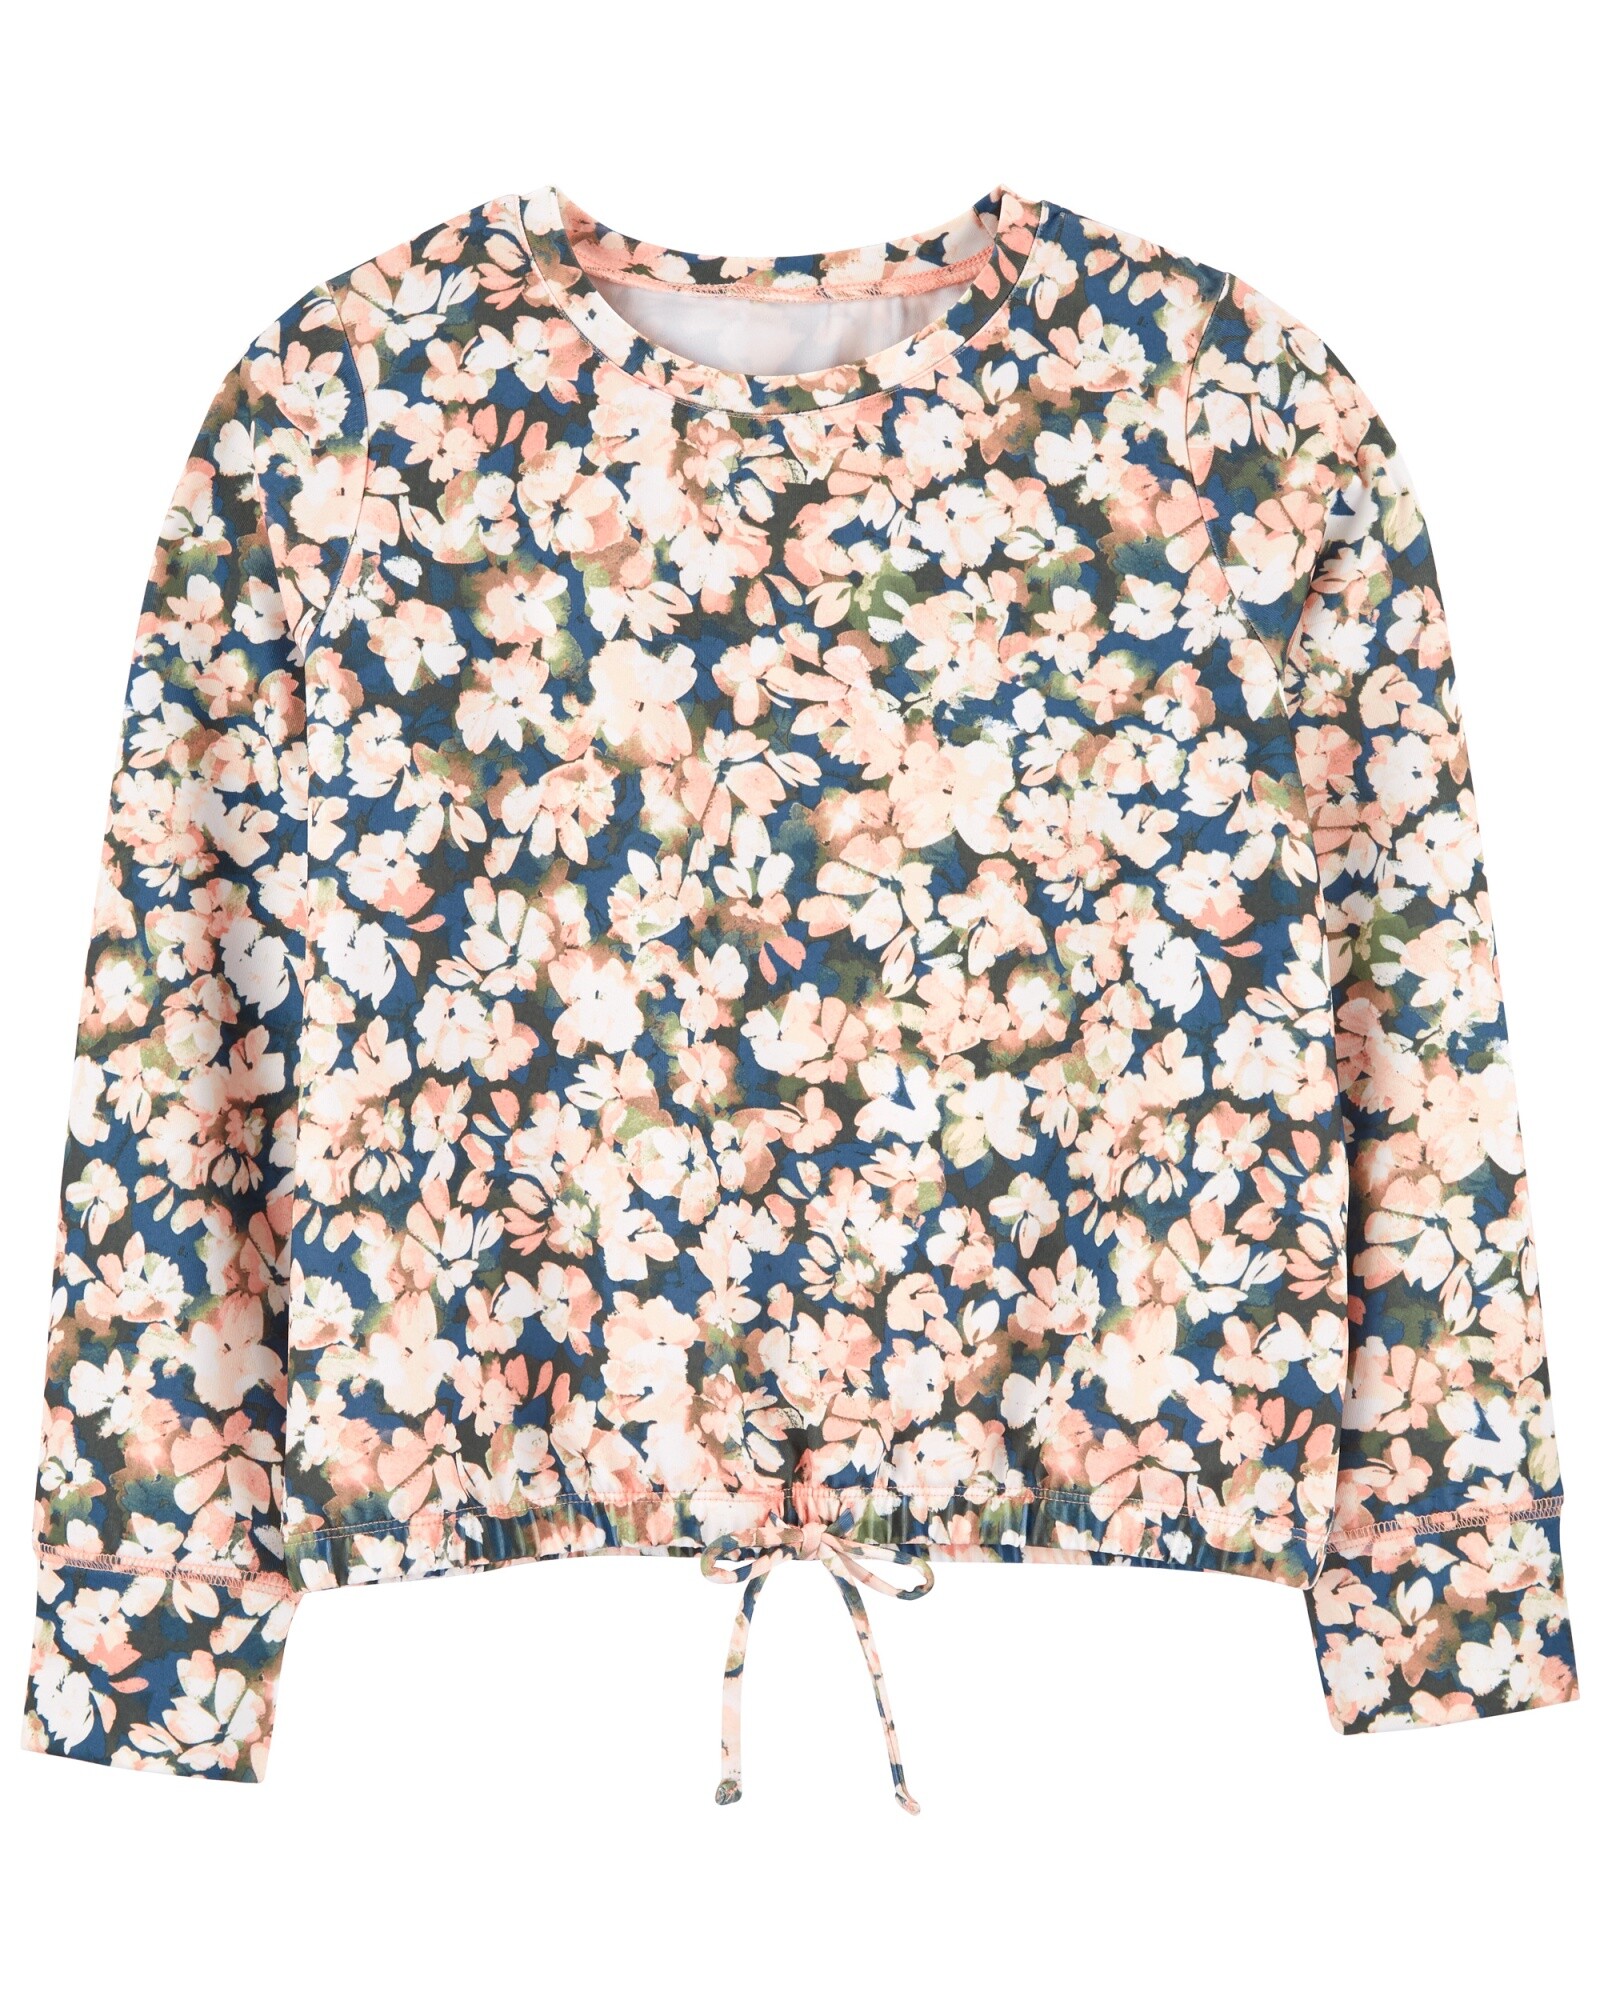 Blusa de poliéster manga larga anudada diseño flores Sin color